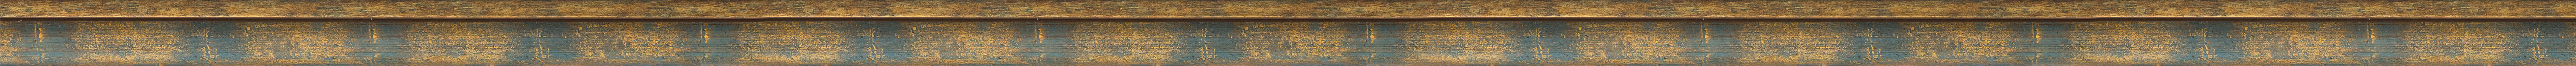 Curved blue-gold frame frame